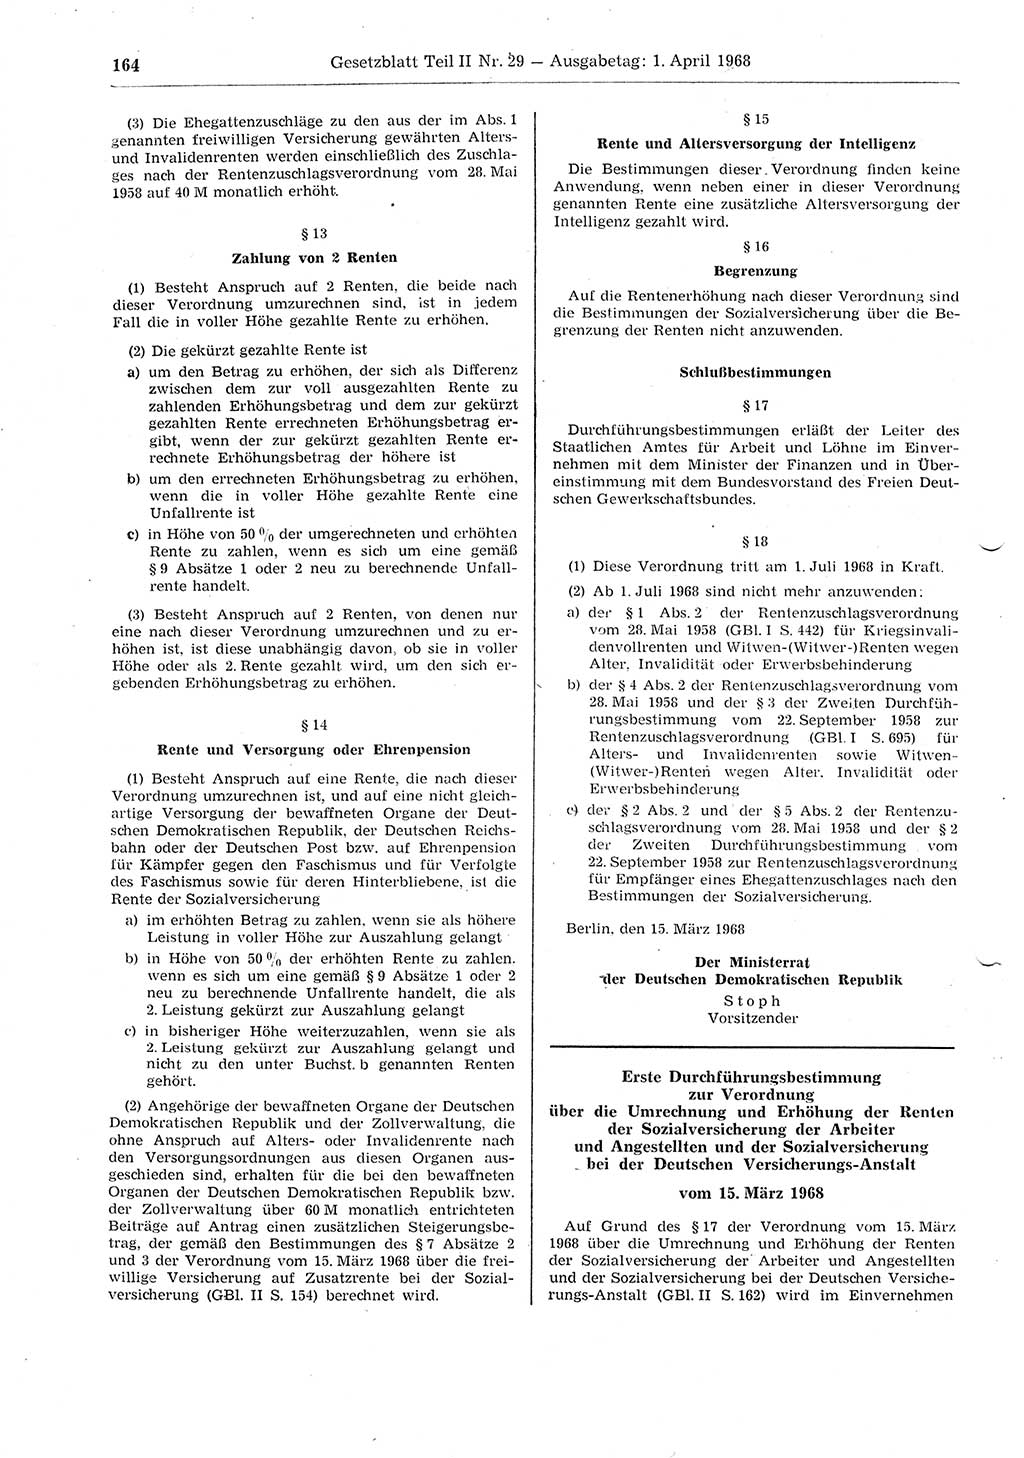 Gesetzblatt (GBl.) der Deutschen Demokratischen Republik (DDR) Teil ⅠⅠ 1968, Seite 164 (GBl. DDR ⅠⅠ 1968, S. 164)